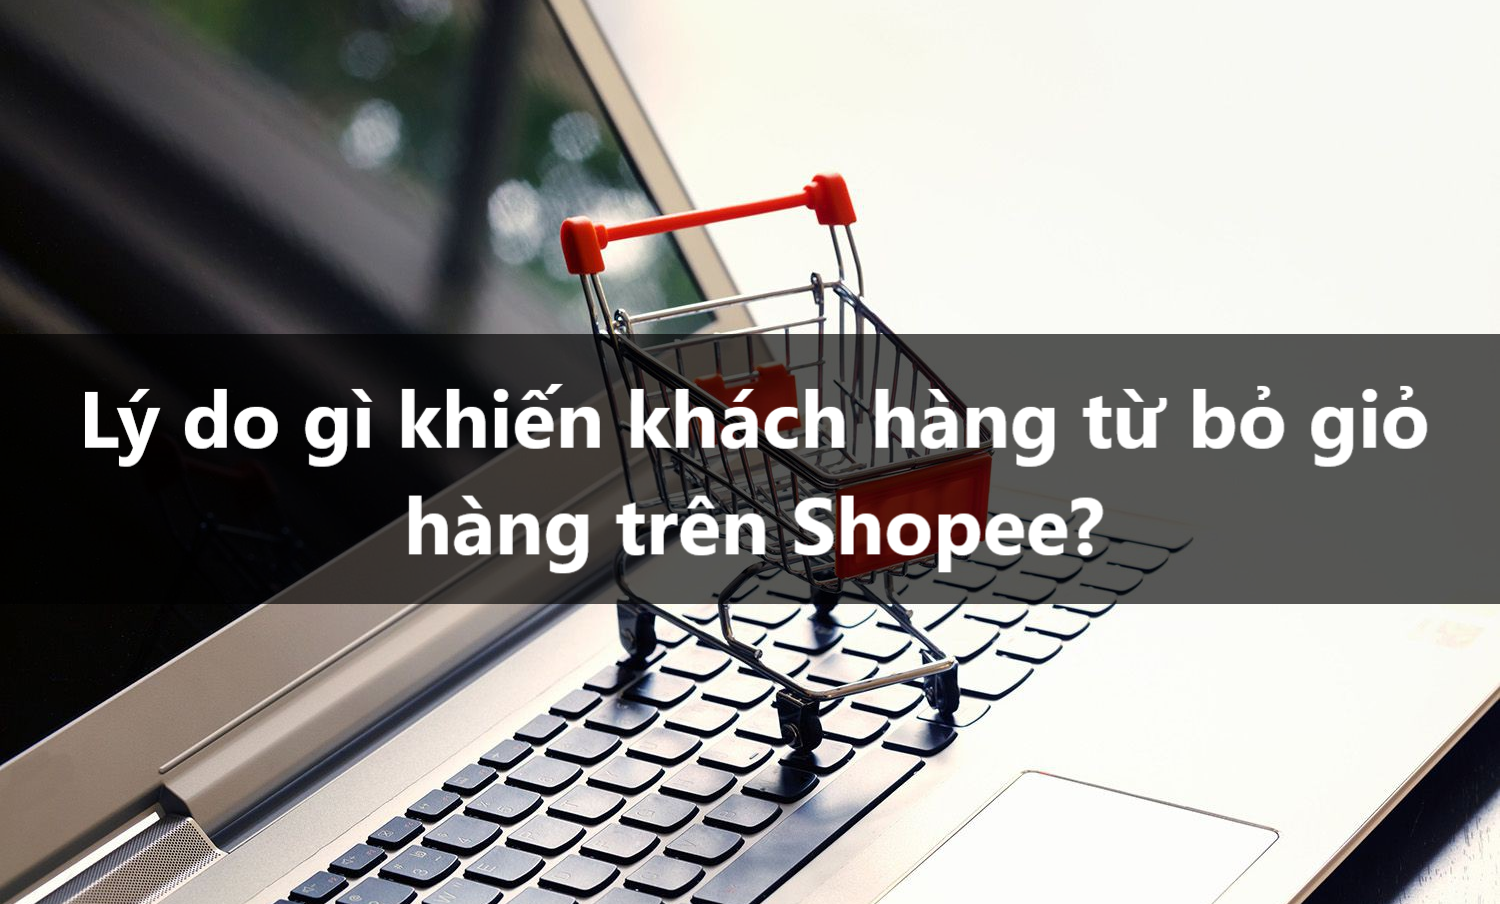 Lý do gì khiến khách hàng từ bỏ giỏ hàng trên Shopee?